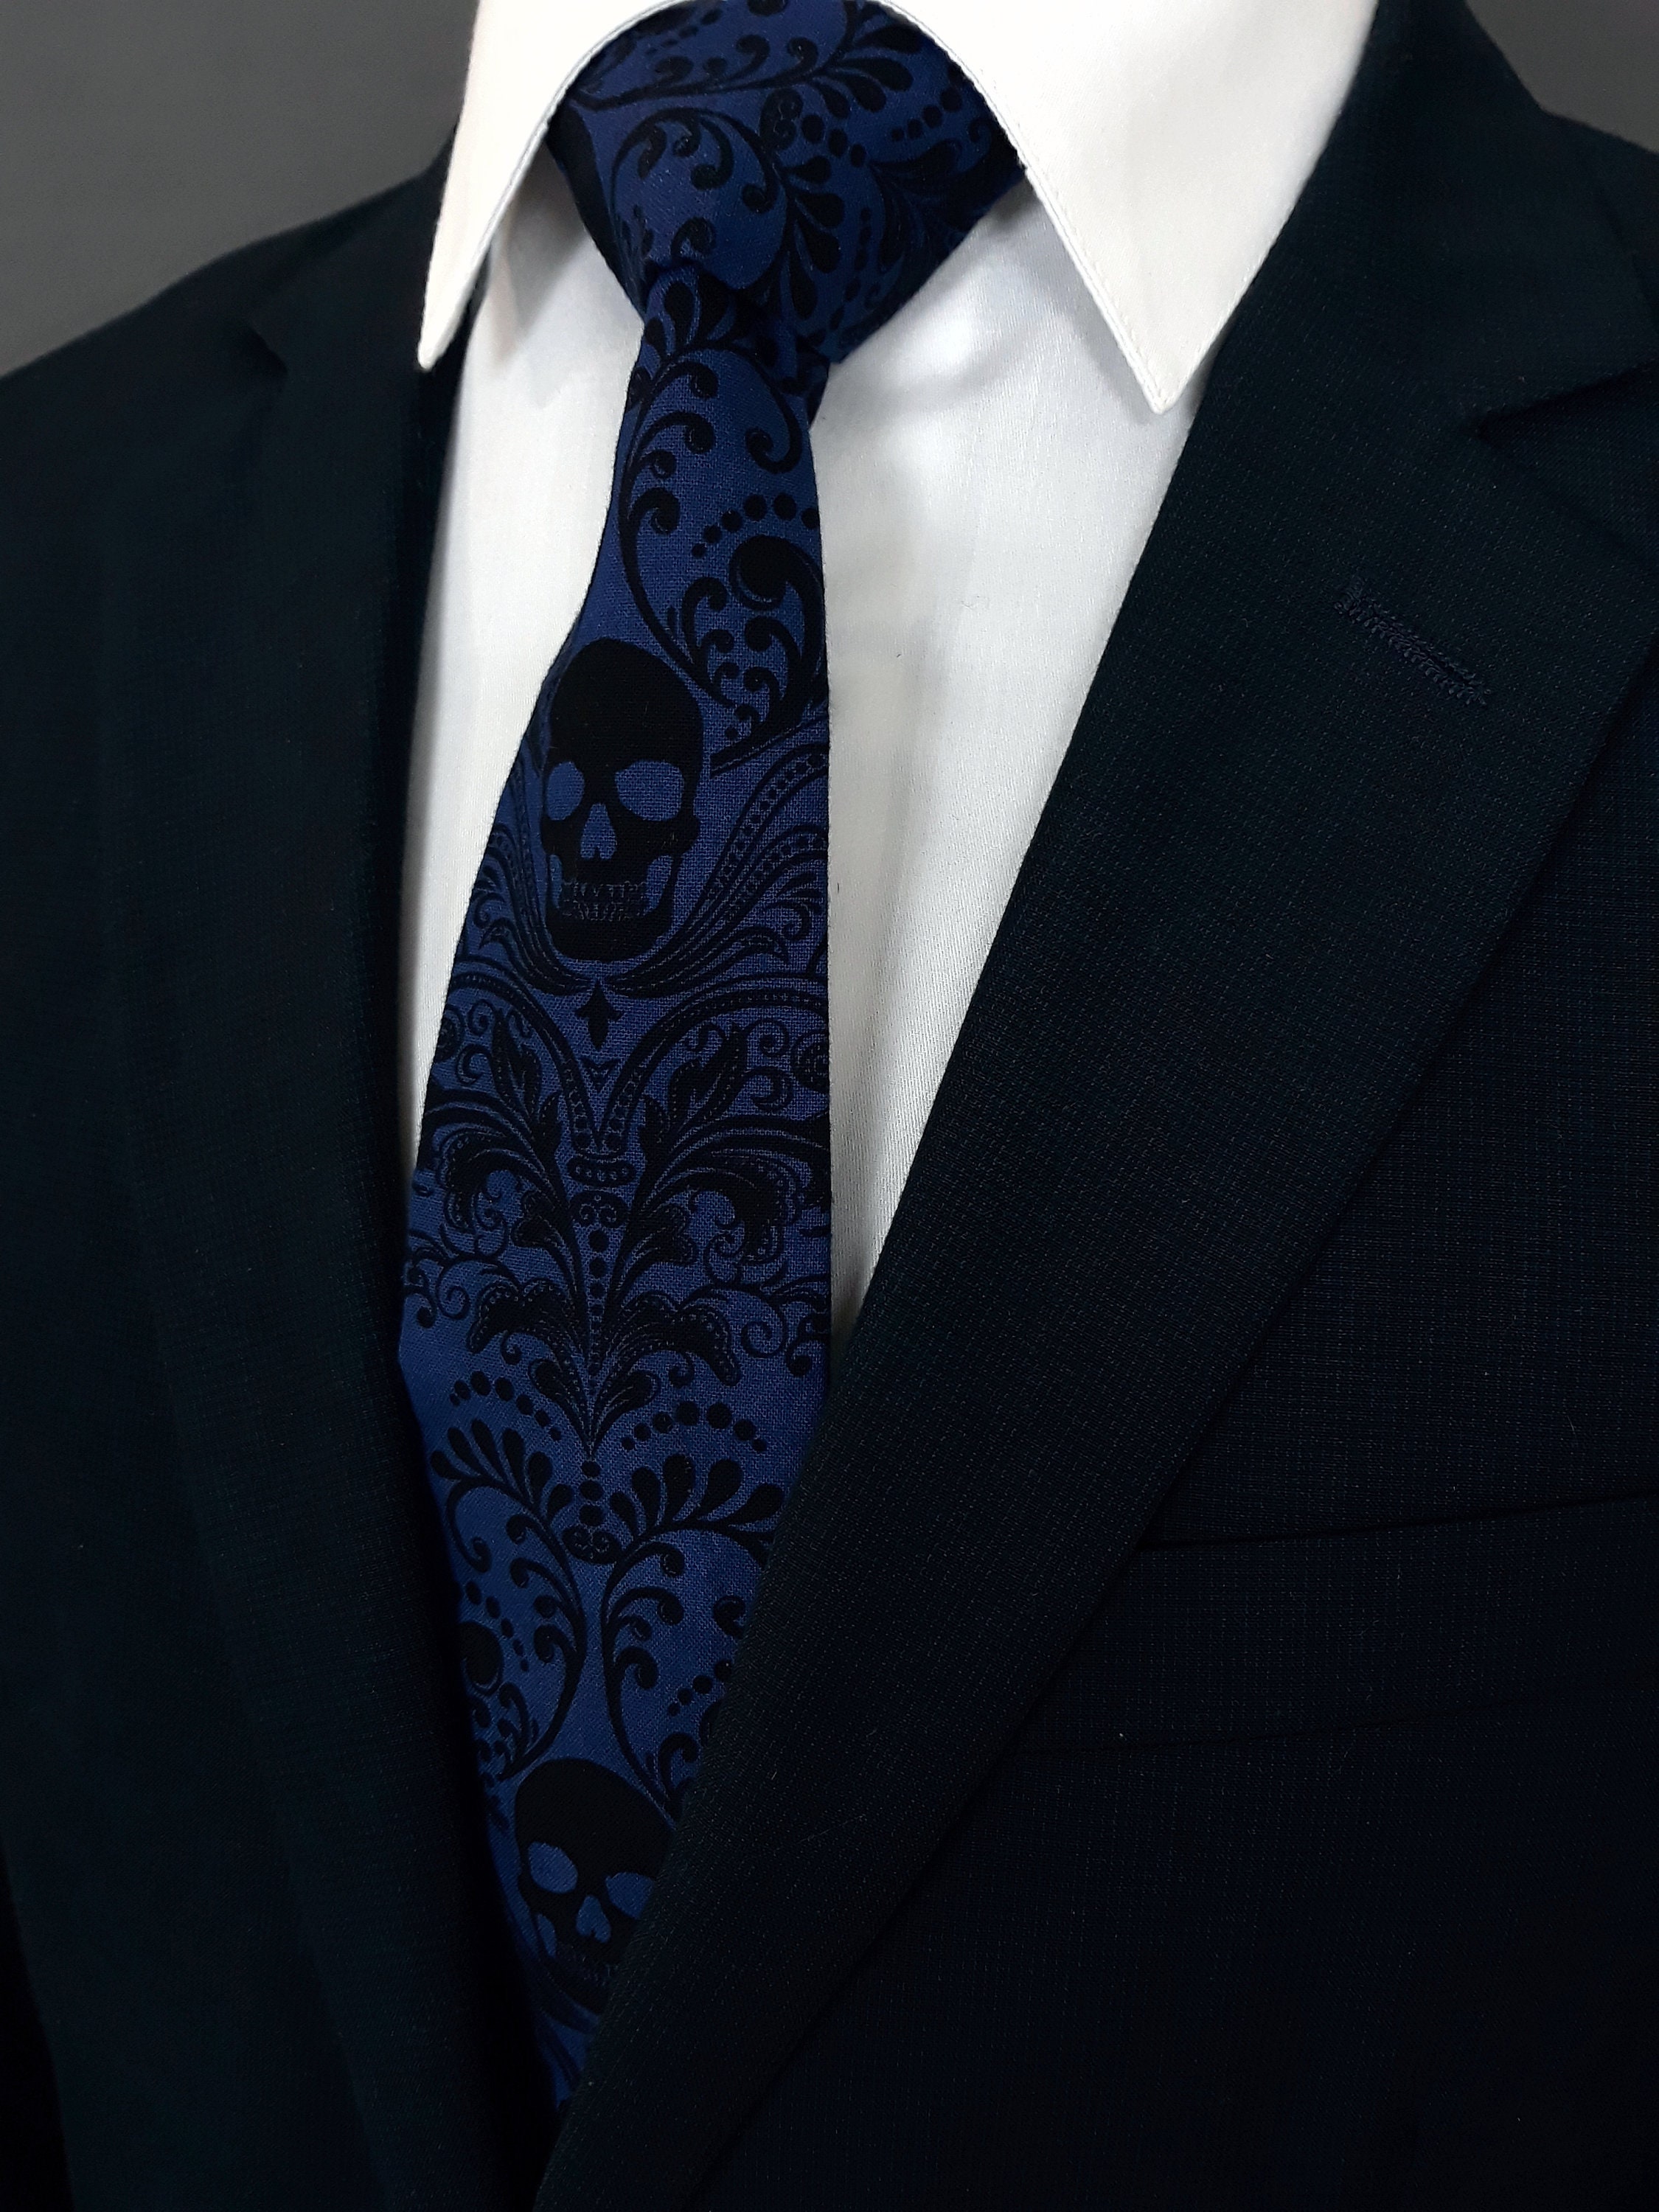 Royal Blue Skull Tie – Gothic Wedding Blue Skull Neckties